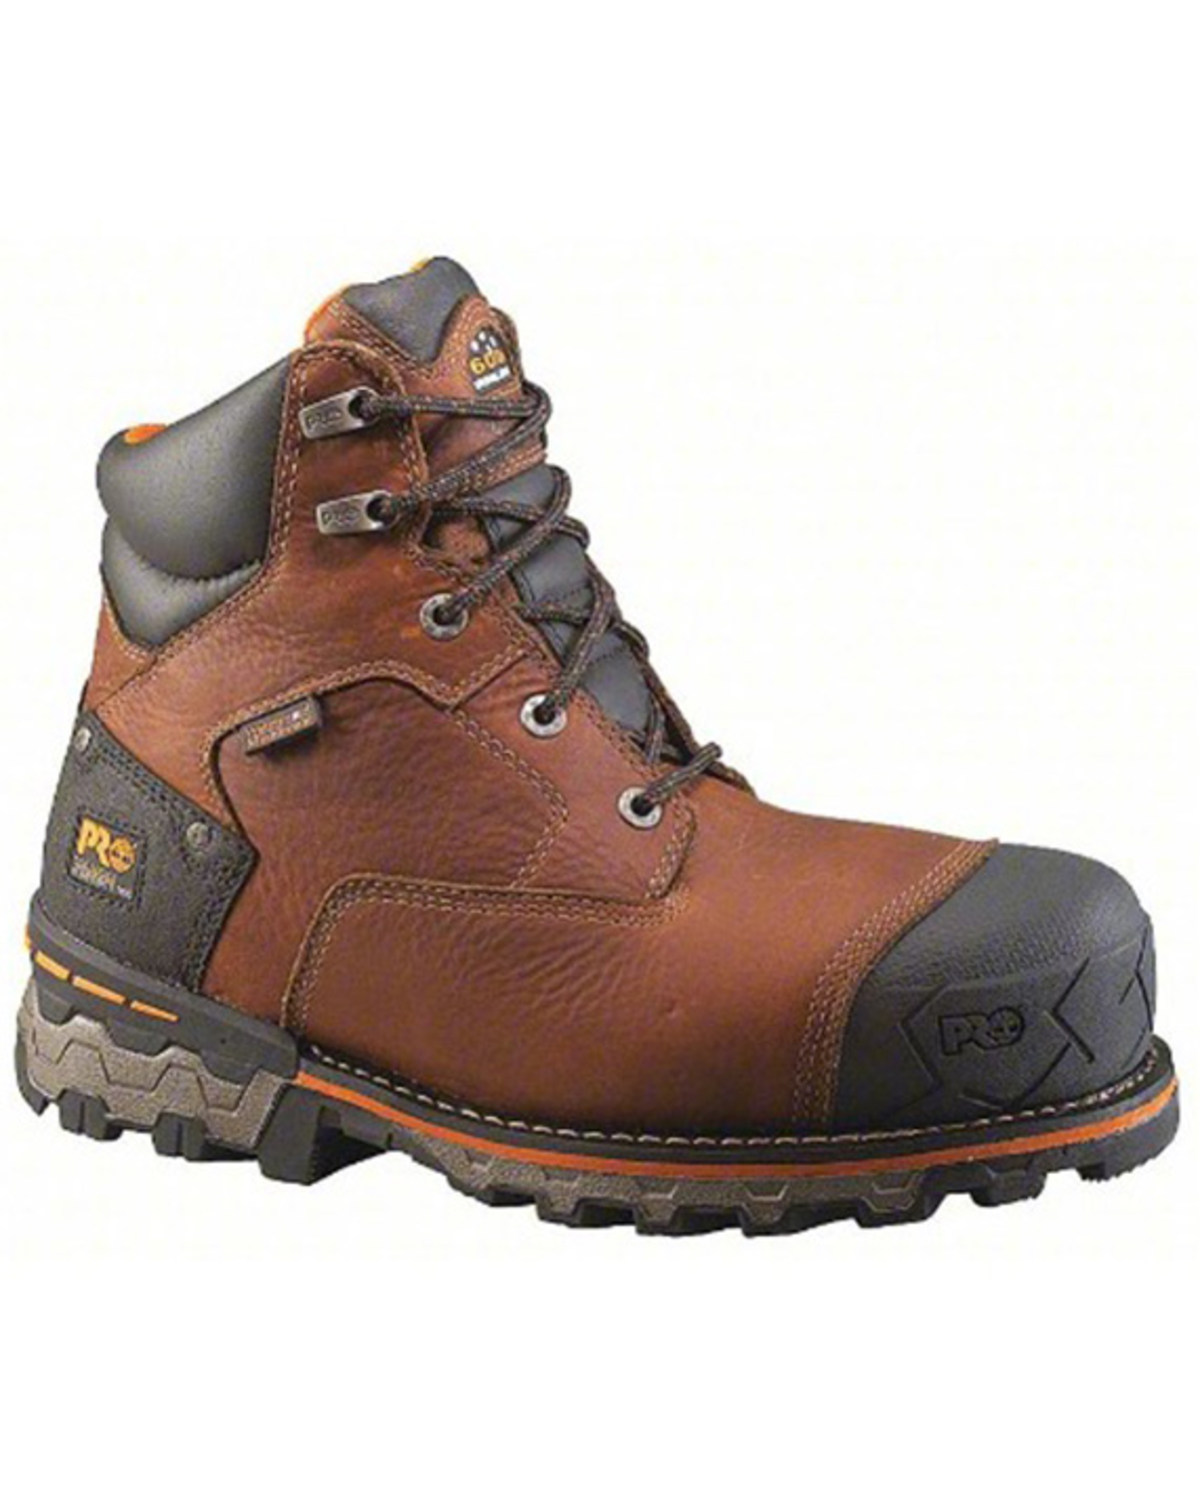 Timberland Men's 6" Boondock Work Boots - Composite Toe